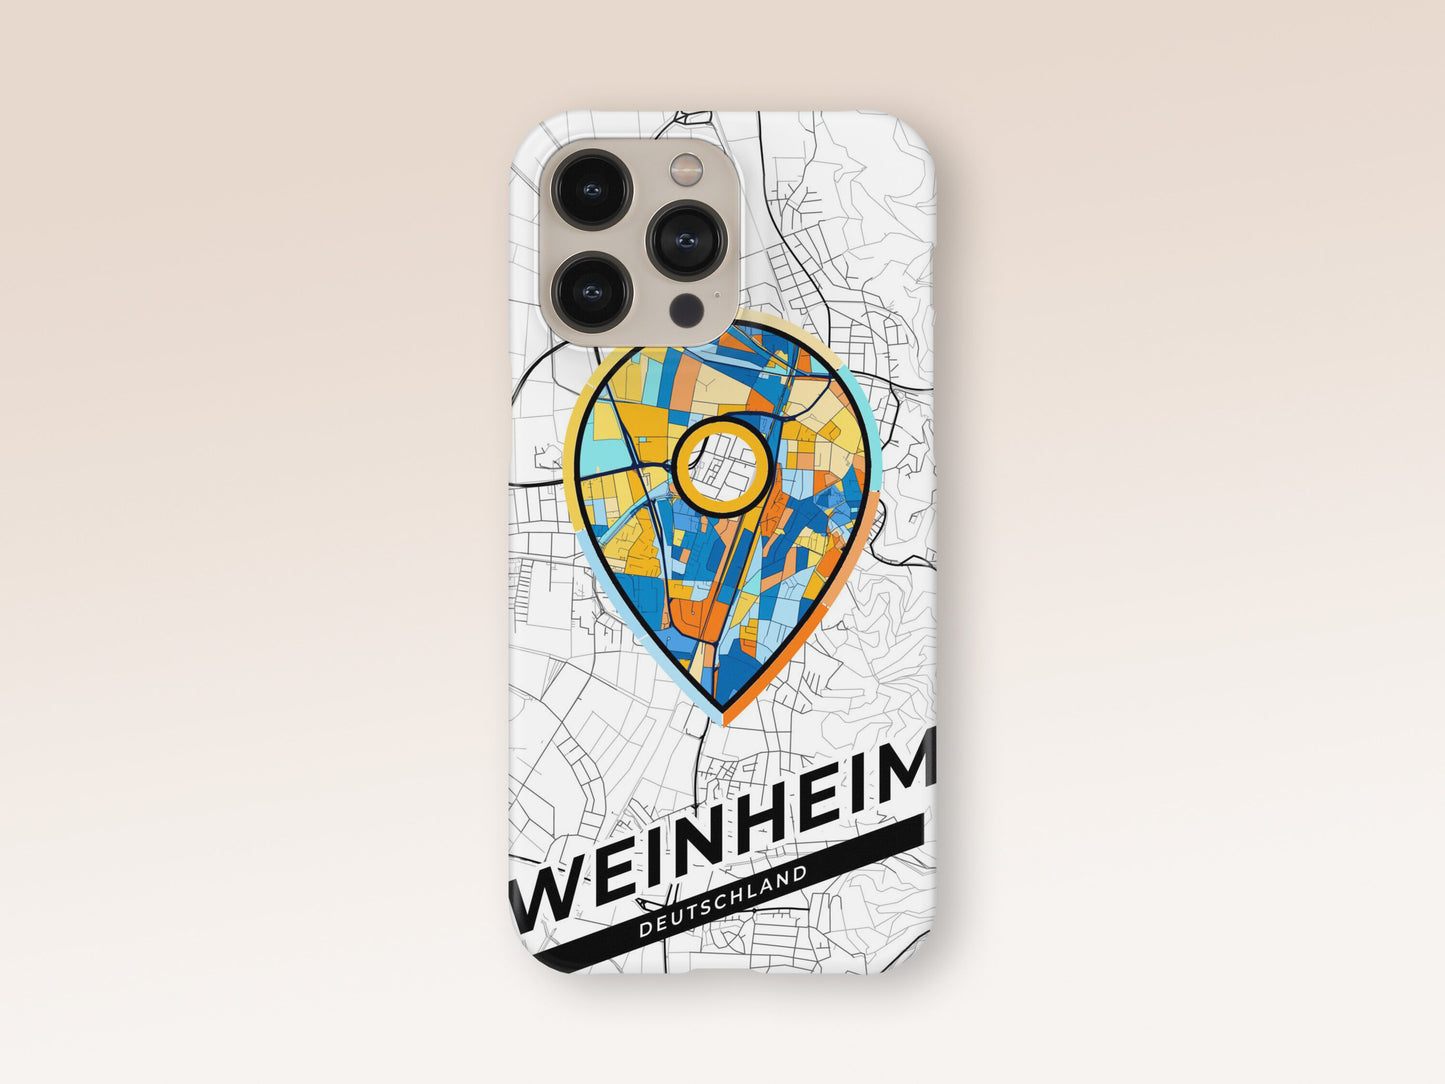 Weinheim Deutschland slim phone case with colorful icon 1